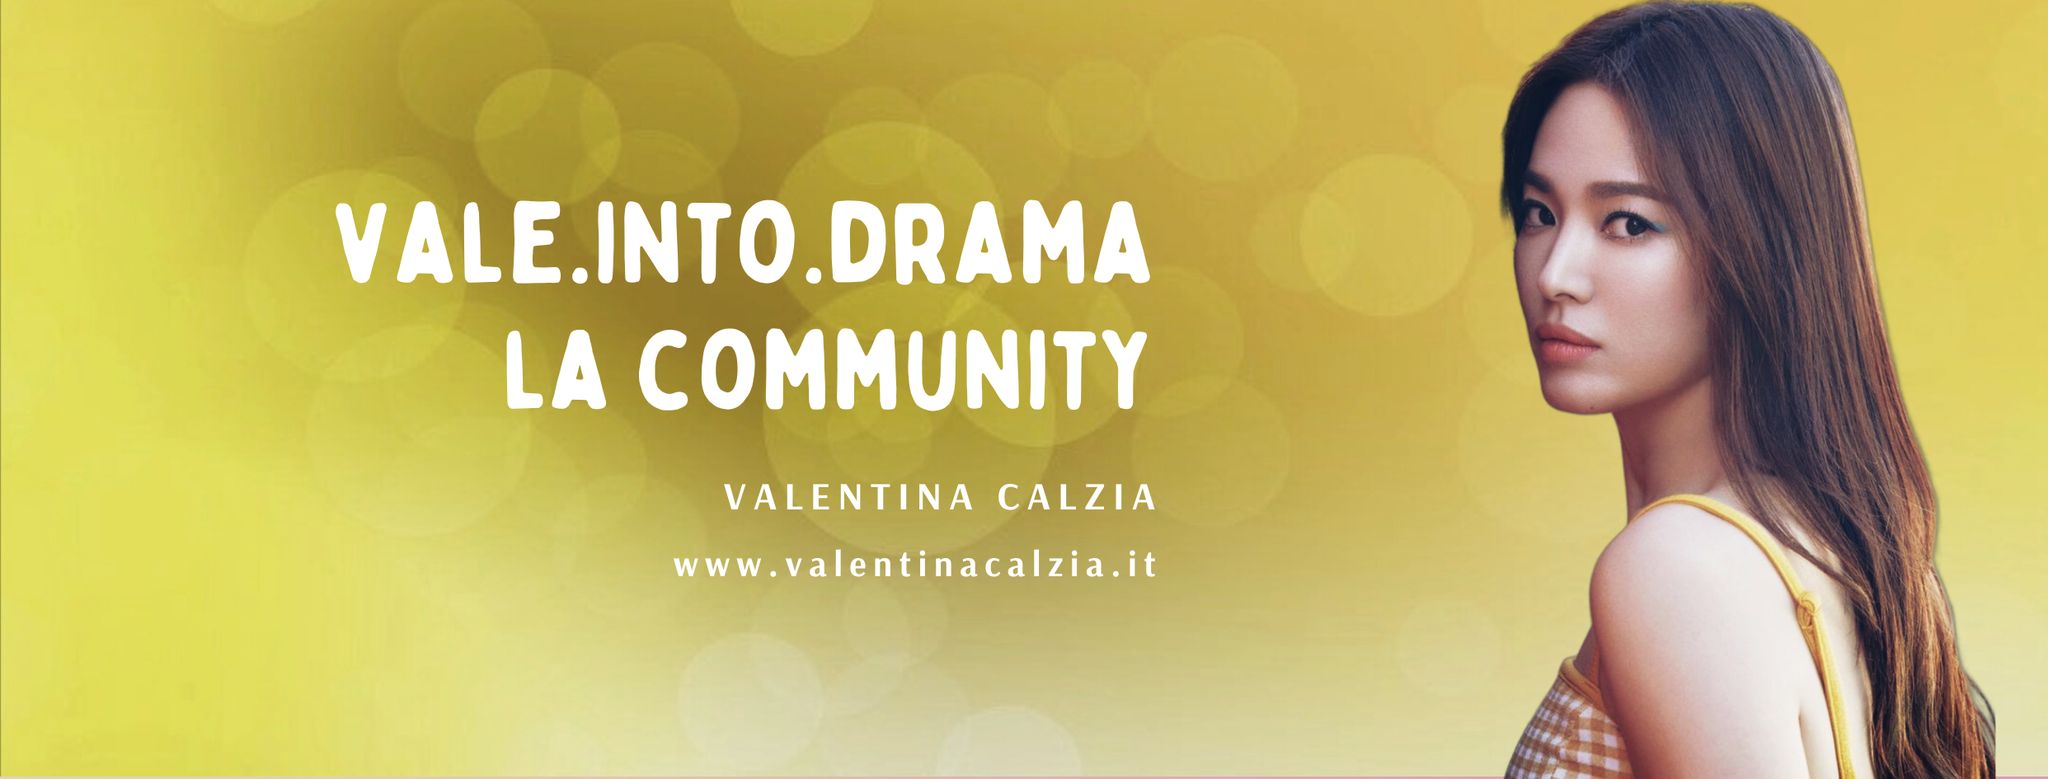 I 10 drama più amati dalla Community Vale.into.Drama